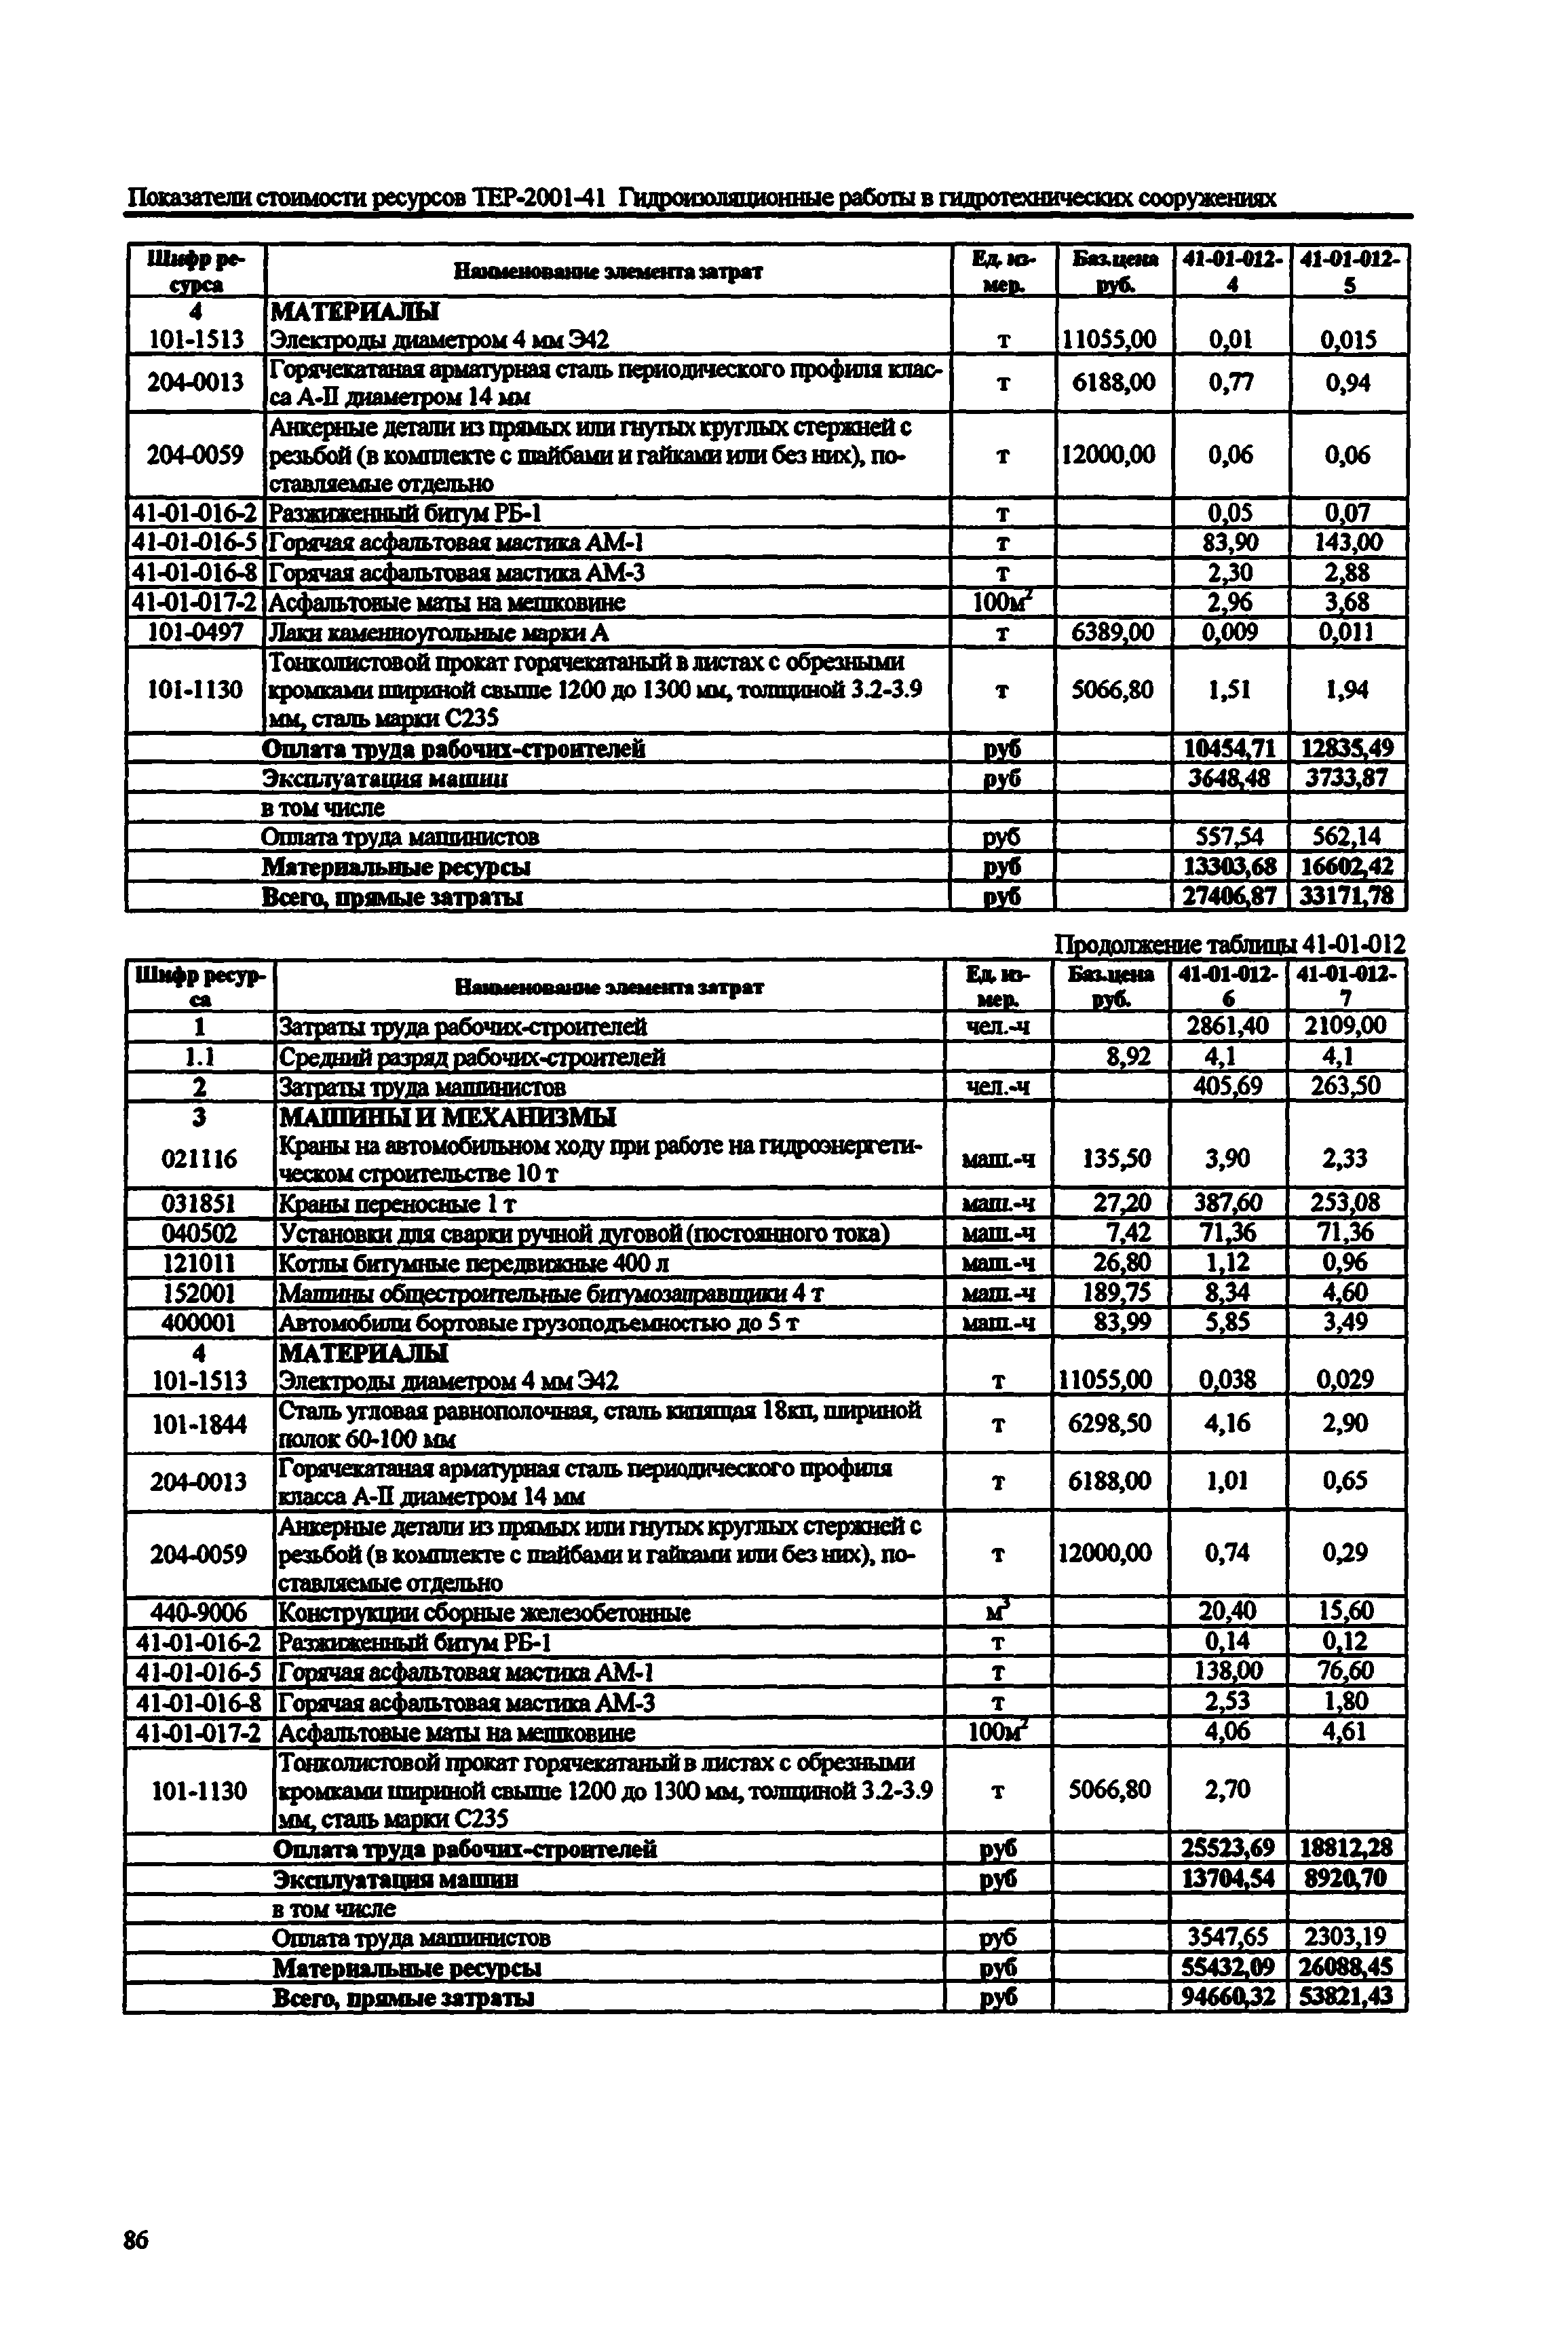 Справочное пособие к ТЕР 81-02-41-2001